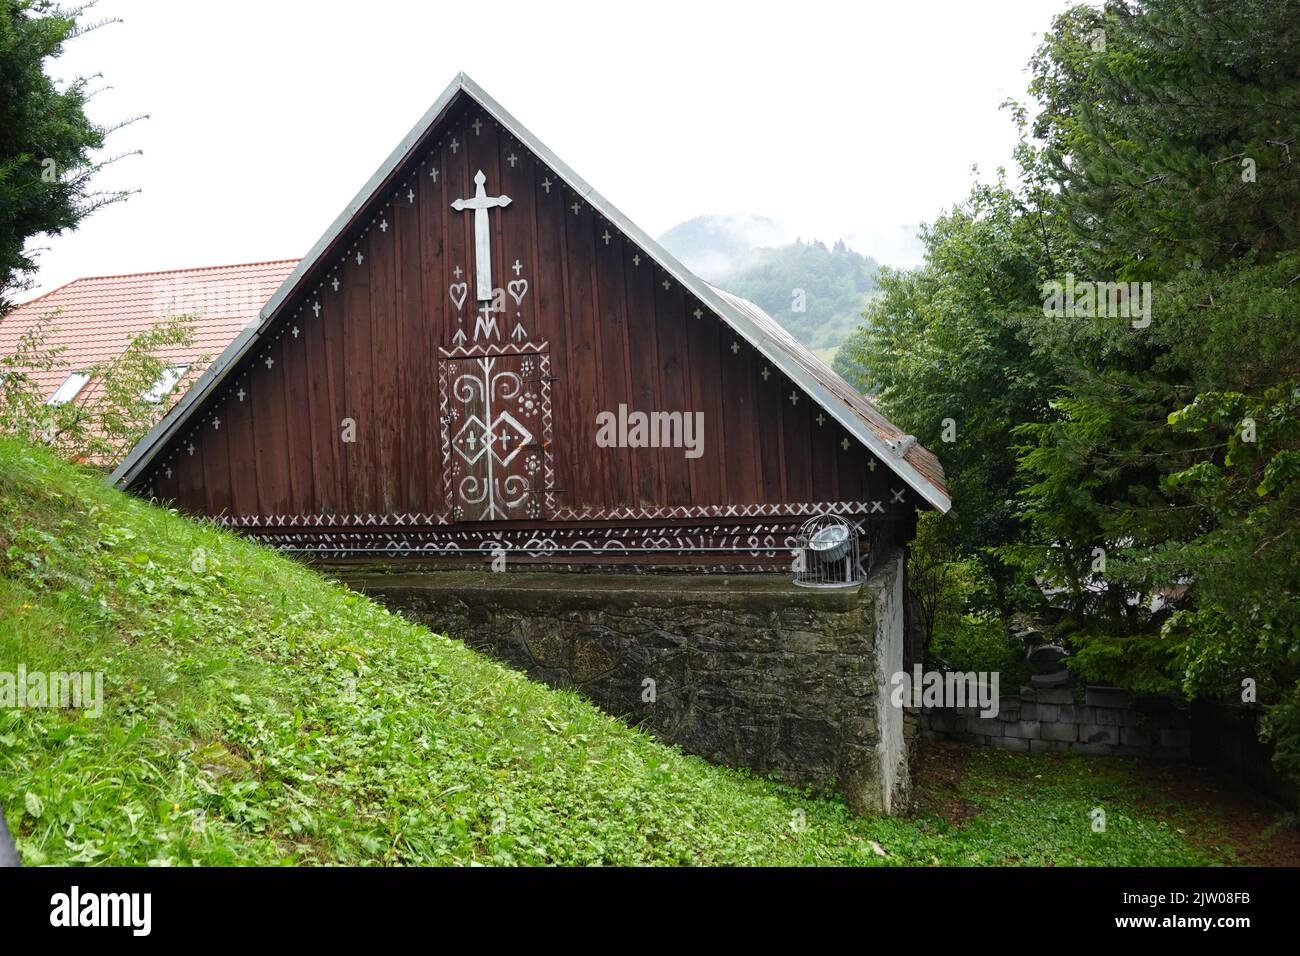 Schöne bemalte Holzhäuser im historischen slowakischen Dorf Cicmany, Slowakei Mitteleuropa Stockfoto